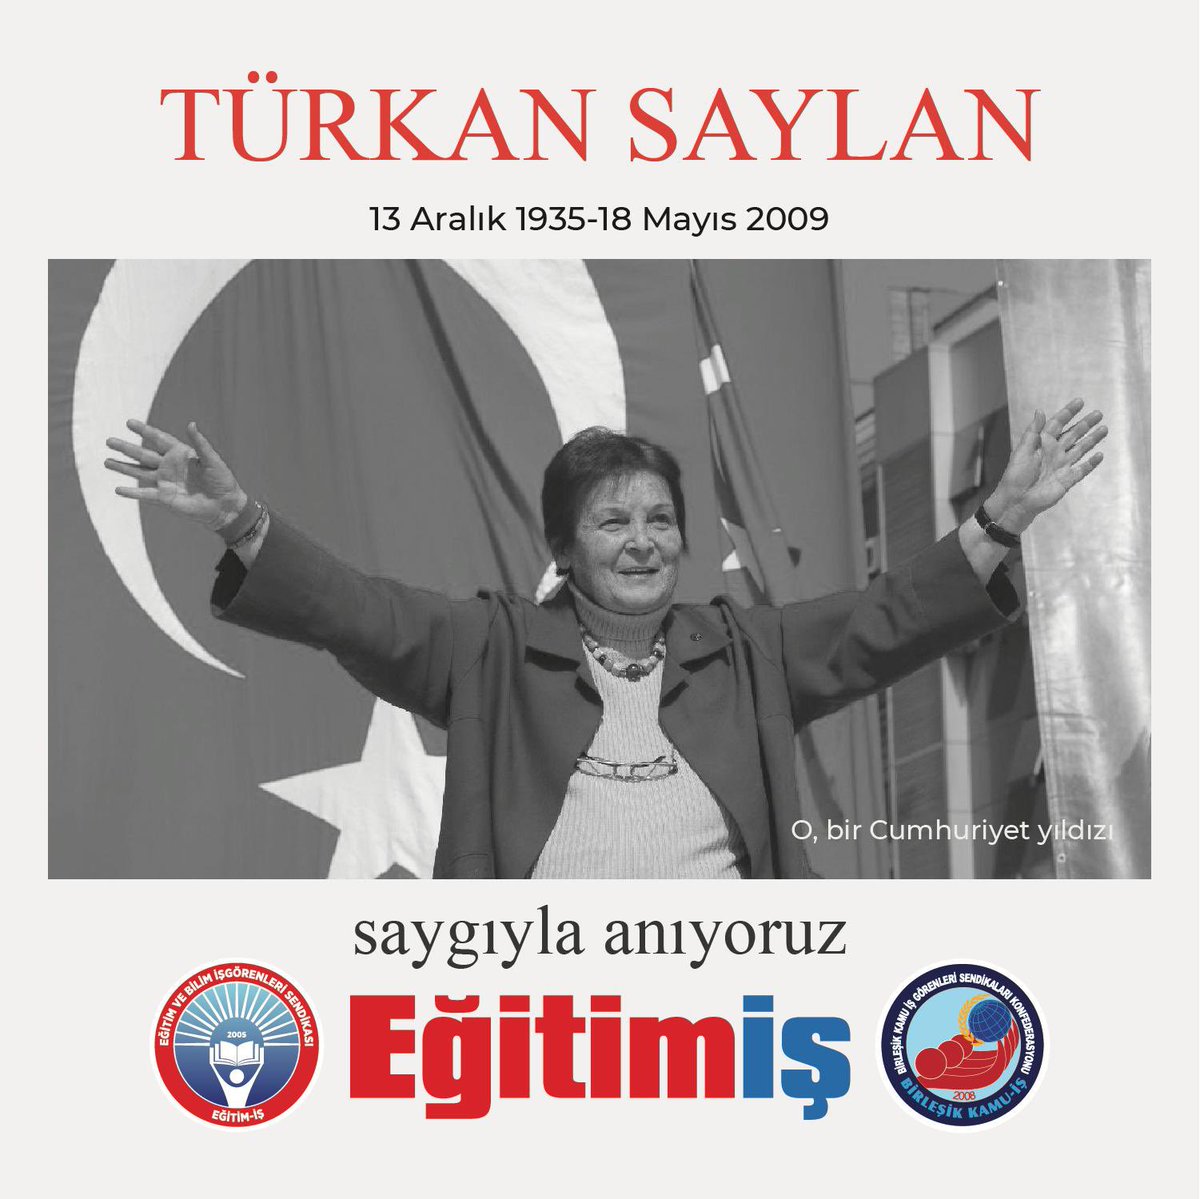 Yaşamını, iyiliğe, doğruluğa, ülkesinin ve insanlarının çağdaşlaşmasına adamış, Atatürk devrim ve ilkelerine yürekten bağlı, Cumhuriyet değerlerinin yılmaz savunucusu, yardımlaşmanın ve dayanışmanın simgesi, bilim kadını Prof. Dr. Türkan Saylan’ ı aramızdan ayrılışının 15.